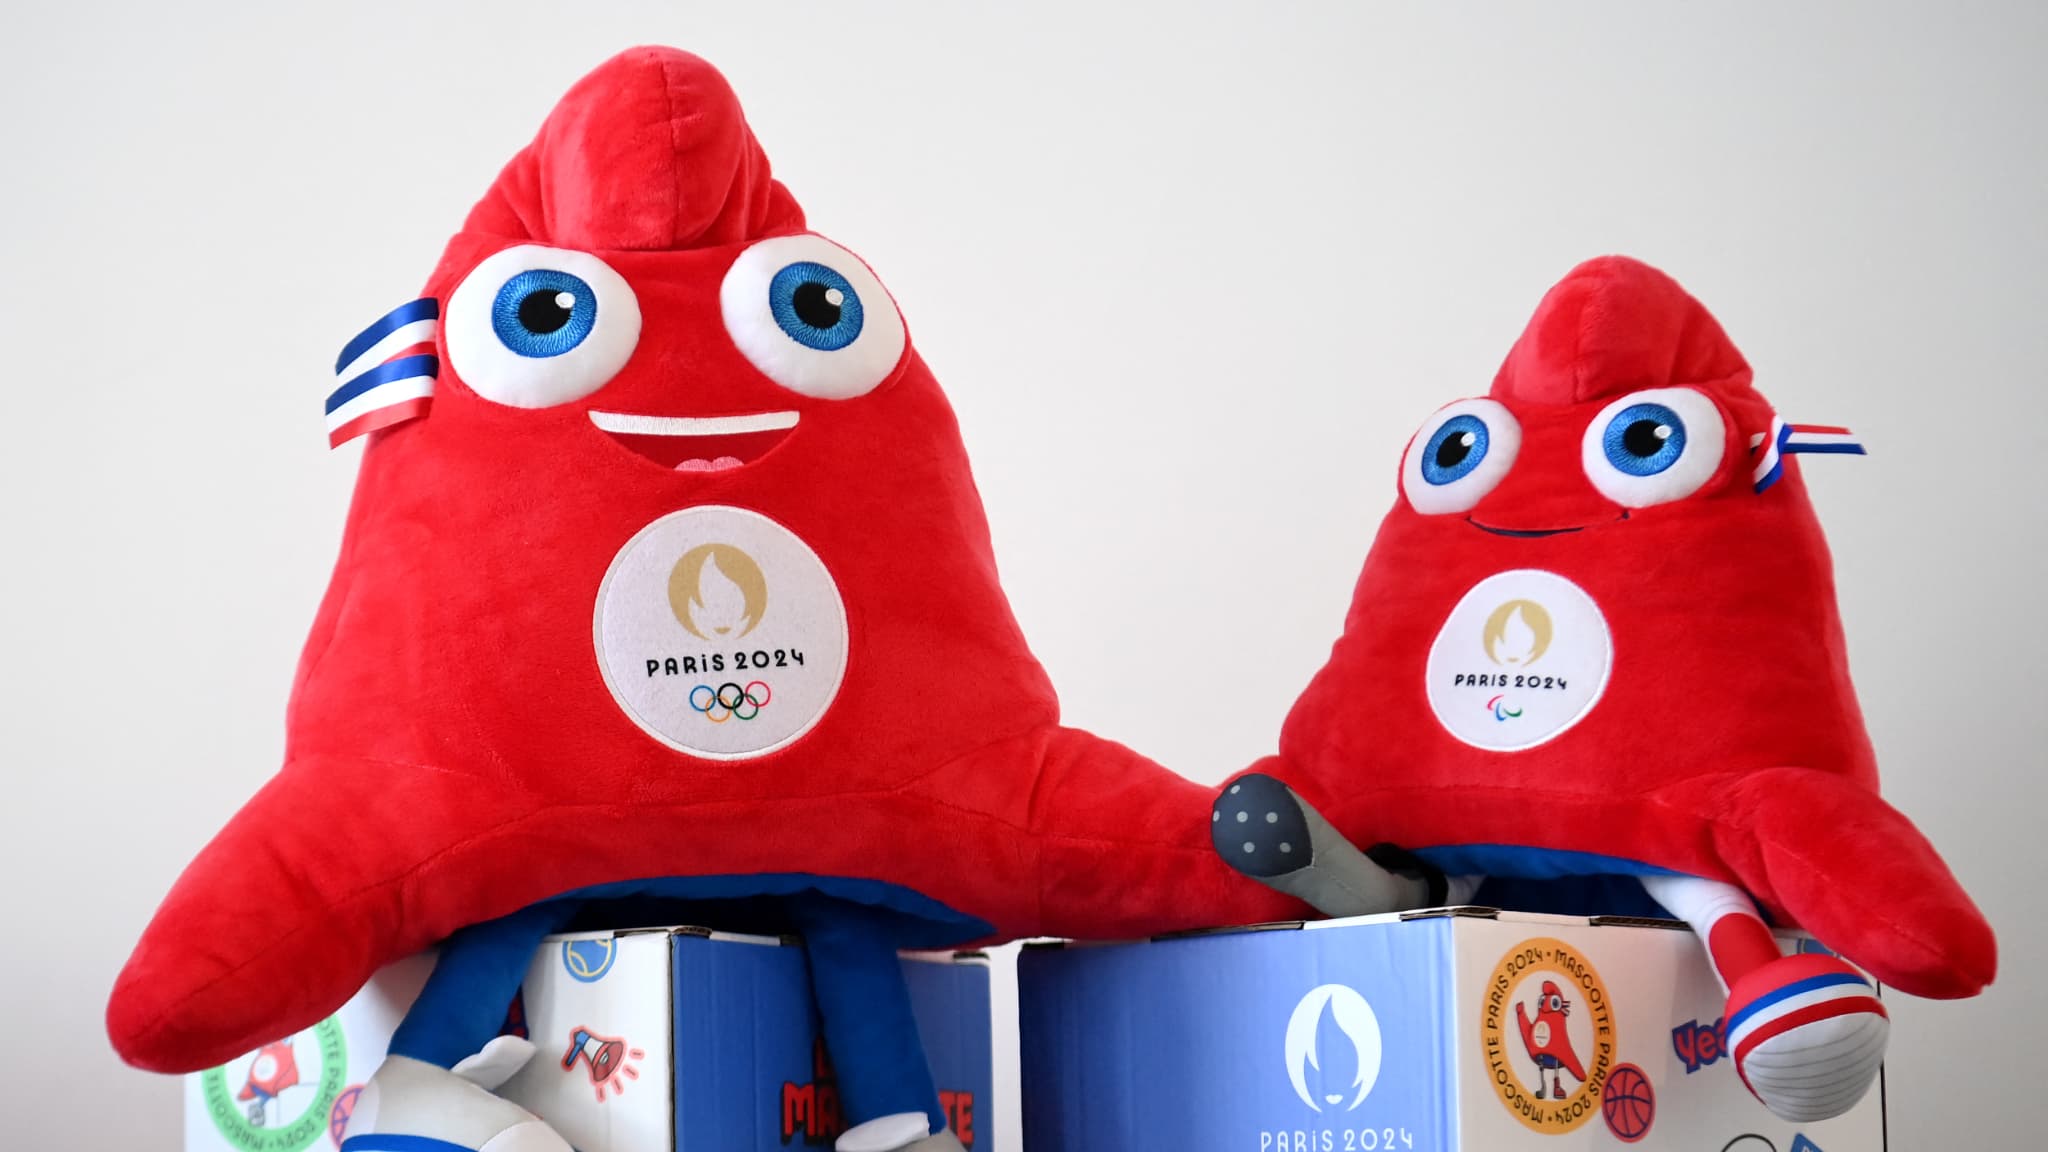 Paris 2024 : la mascotte made in China des Jeux, symbole d'un